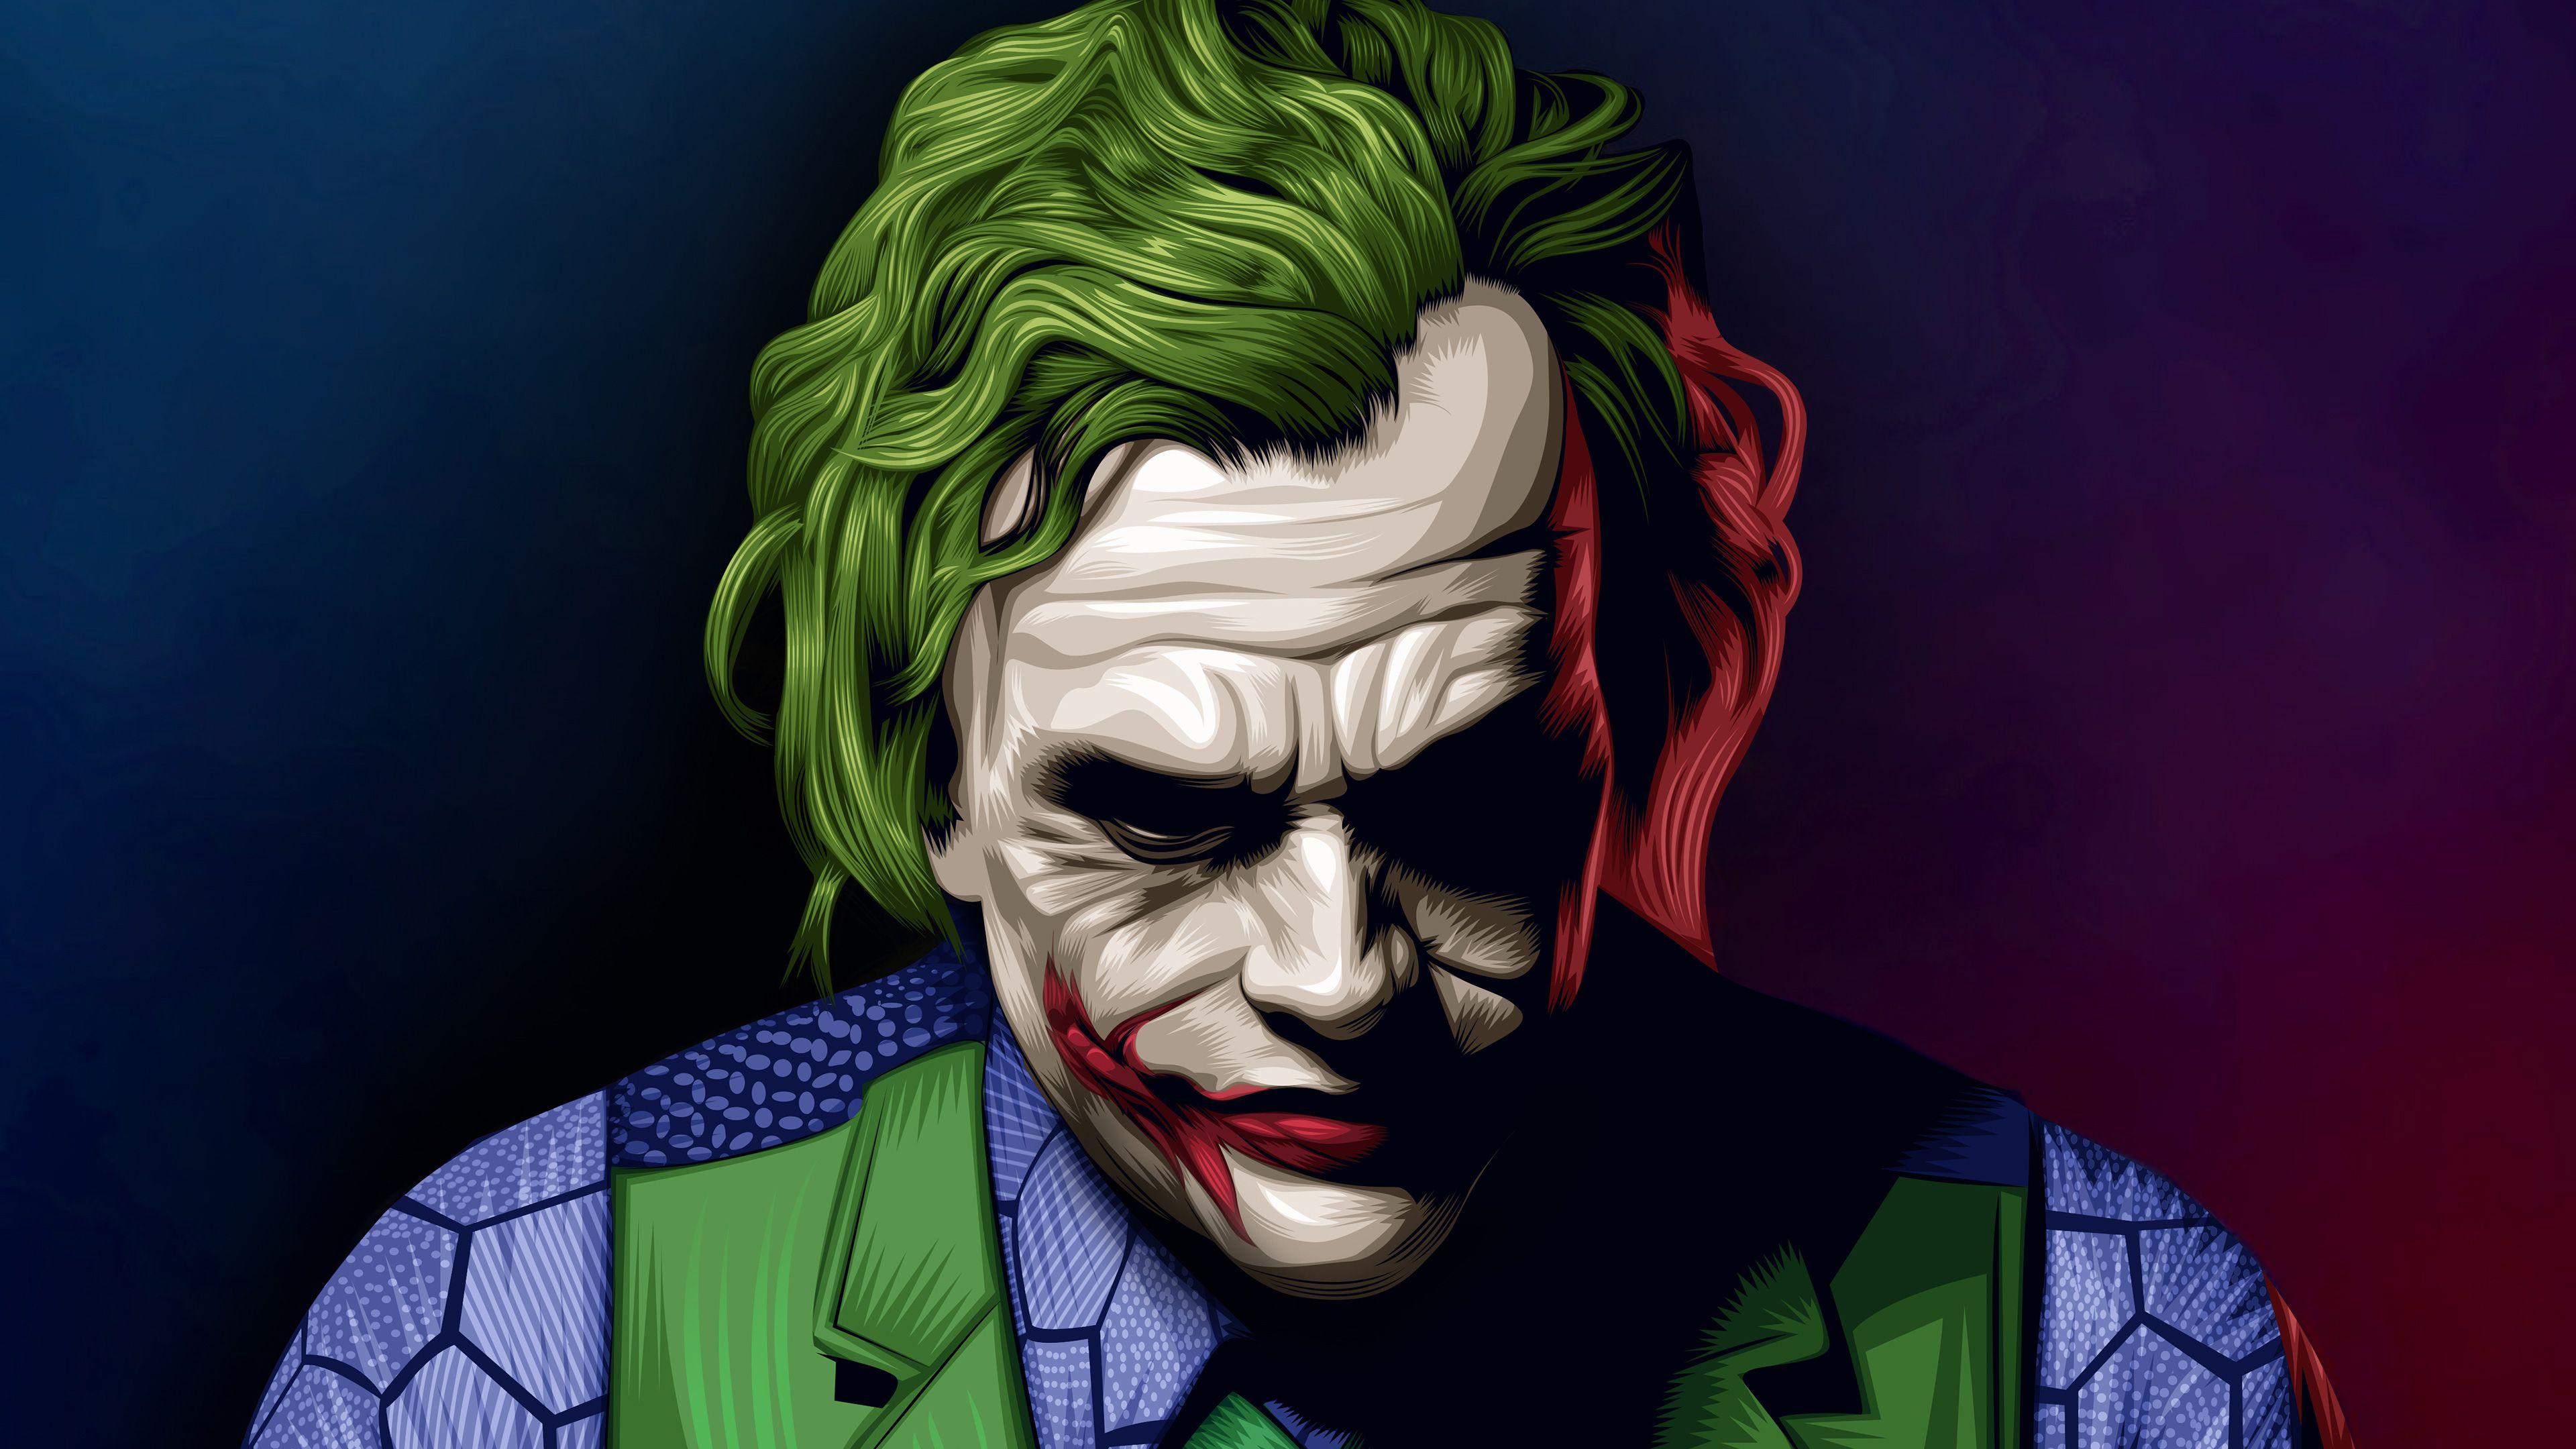 Joker Heath Ledger Illustration superheroes wallpaper, joker wallpaper, HD -wallpaper, digital art wallpaper. Joker wallpaper, Joker HD wallpaper, Joker image